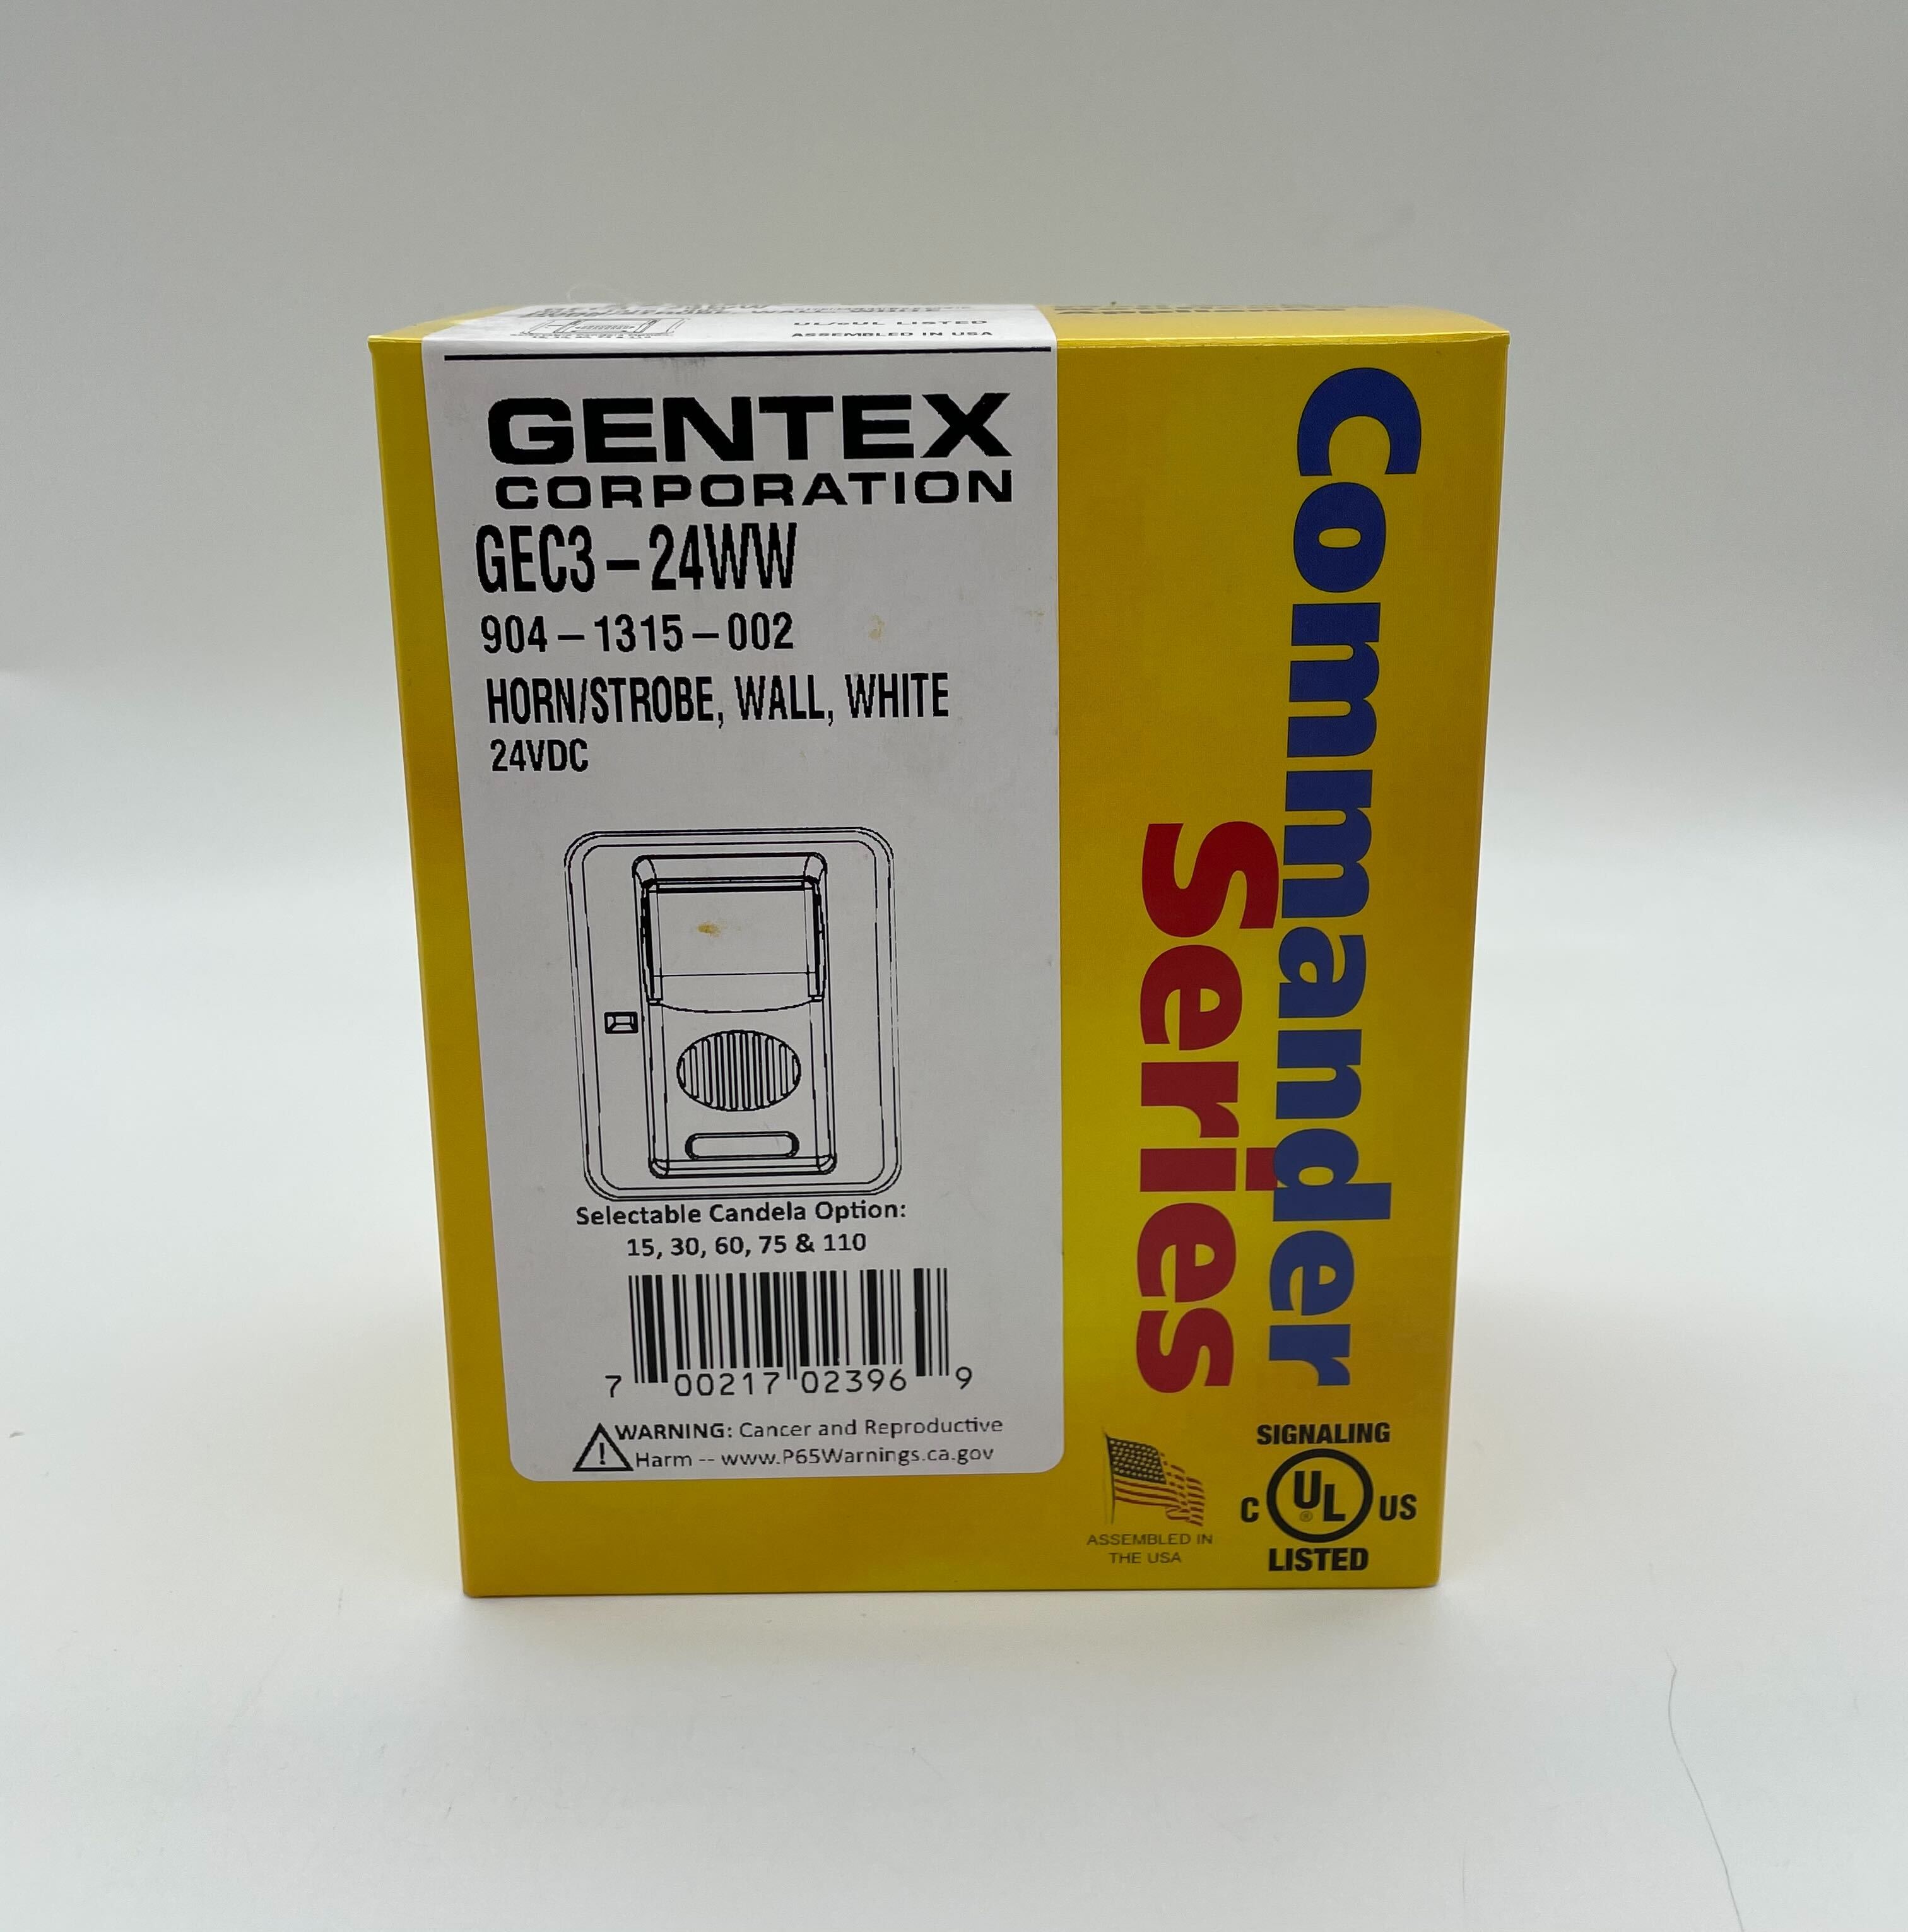 Gentex GEC3-24WW